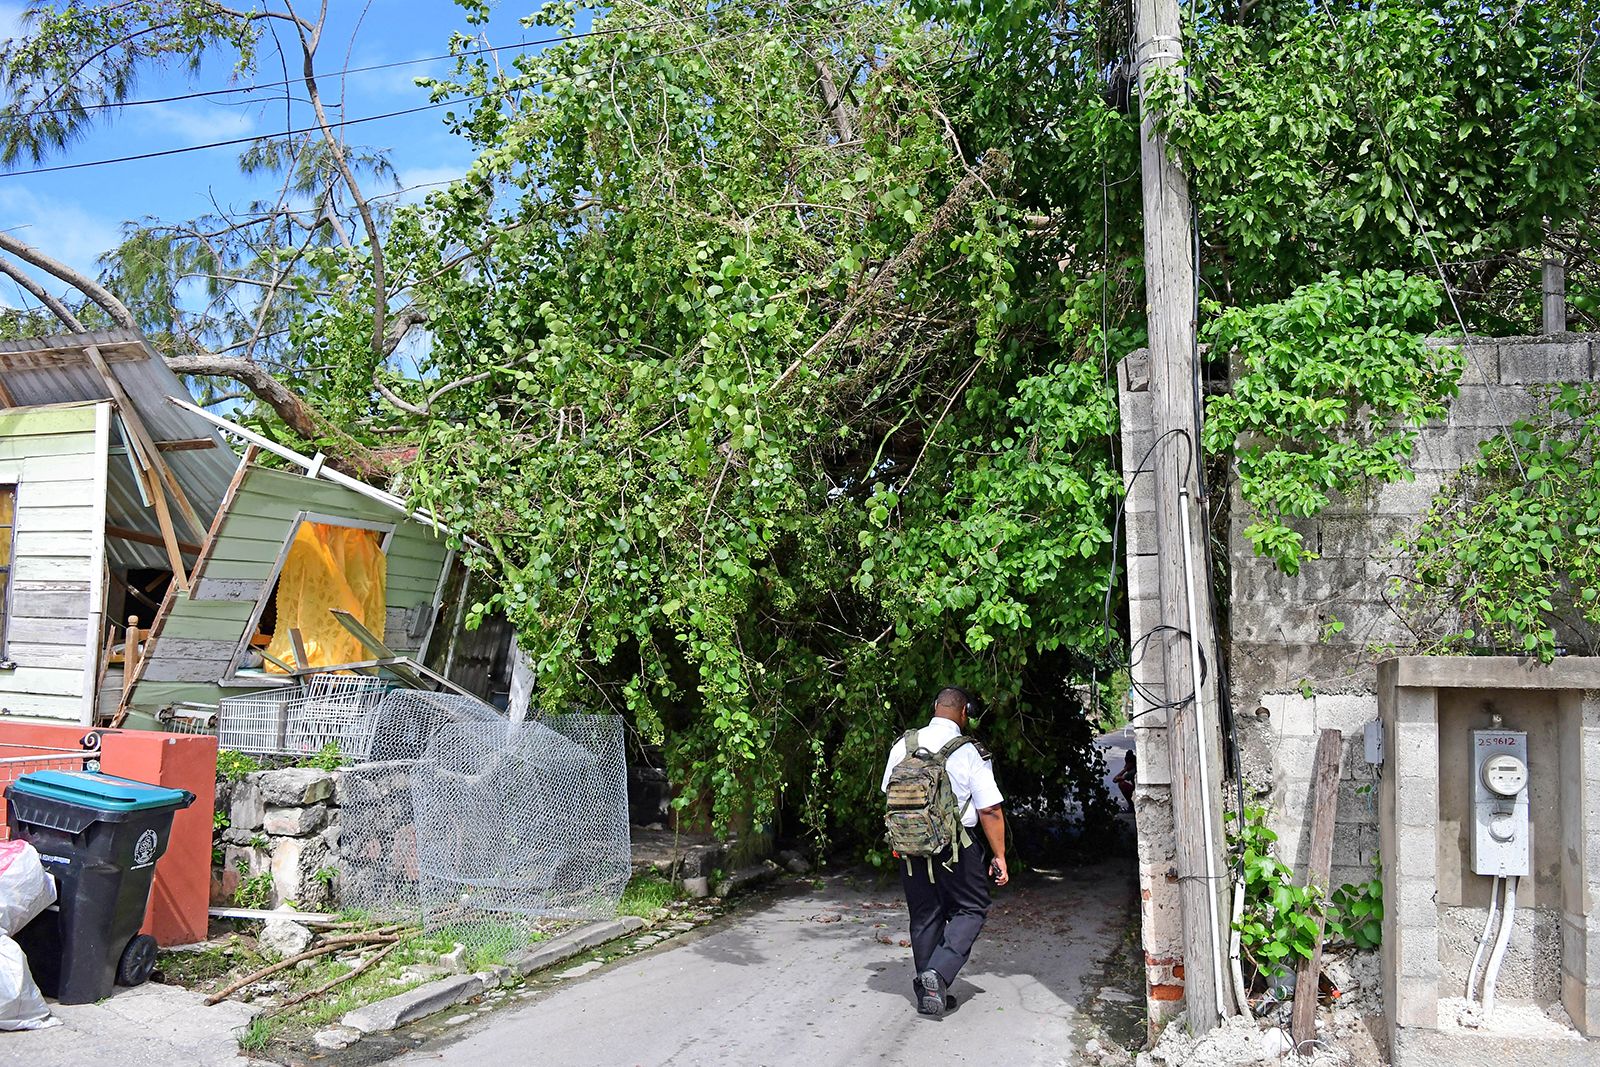 Tropical Storm Bret no more; storm falls apart in the Caribbean